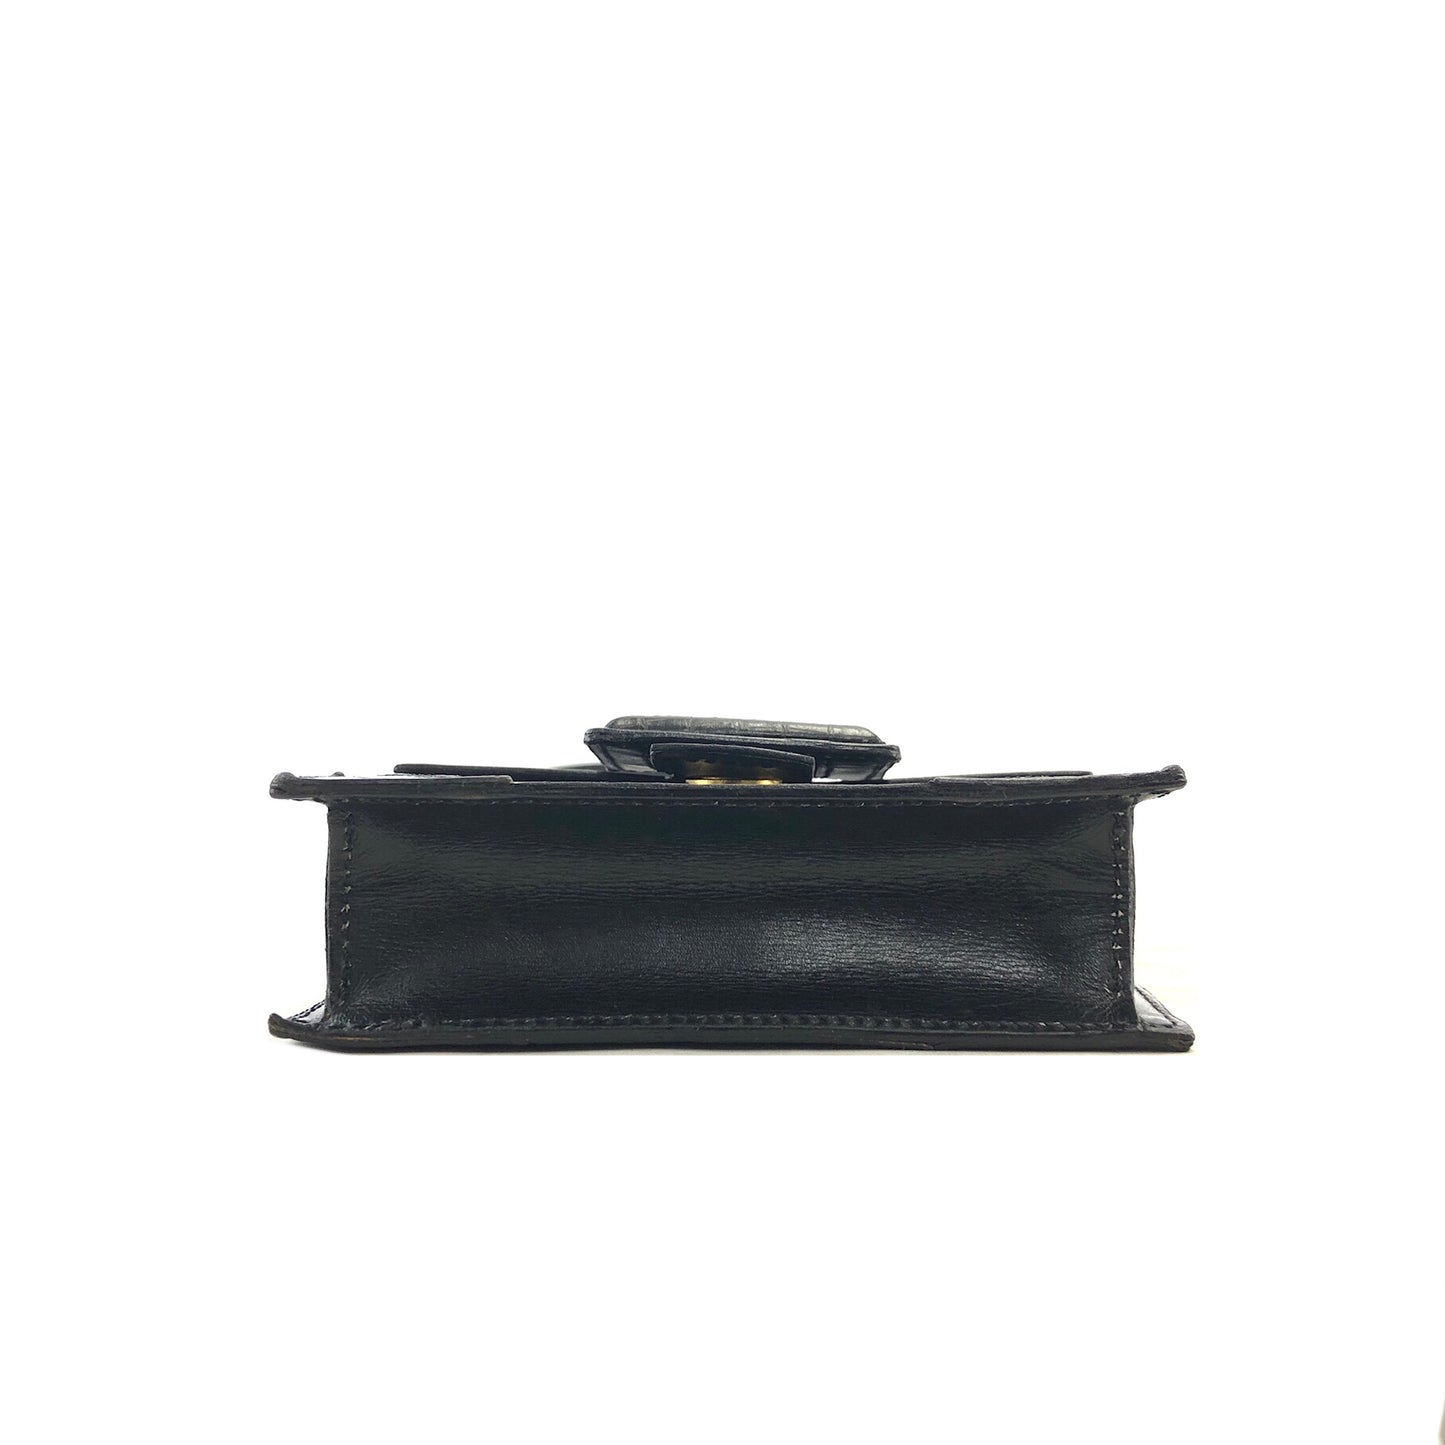 CELINE Front Buckle Leather Shoulder bag Black Vintage m4ezj3